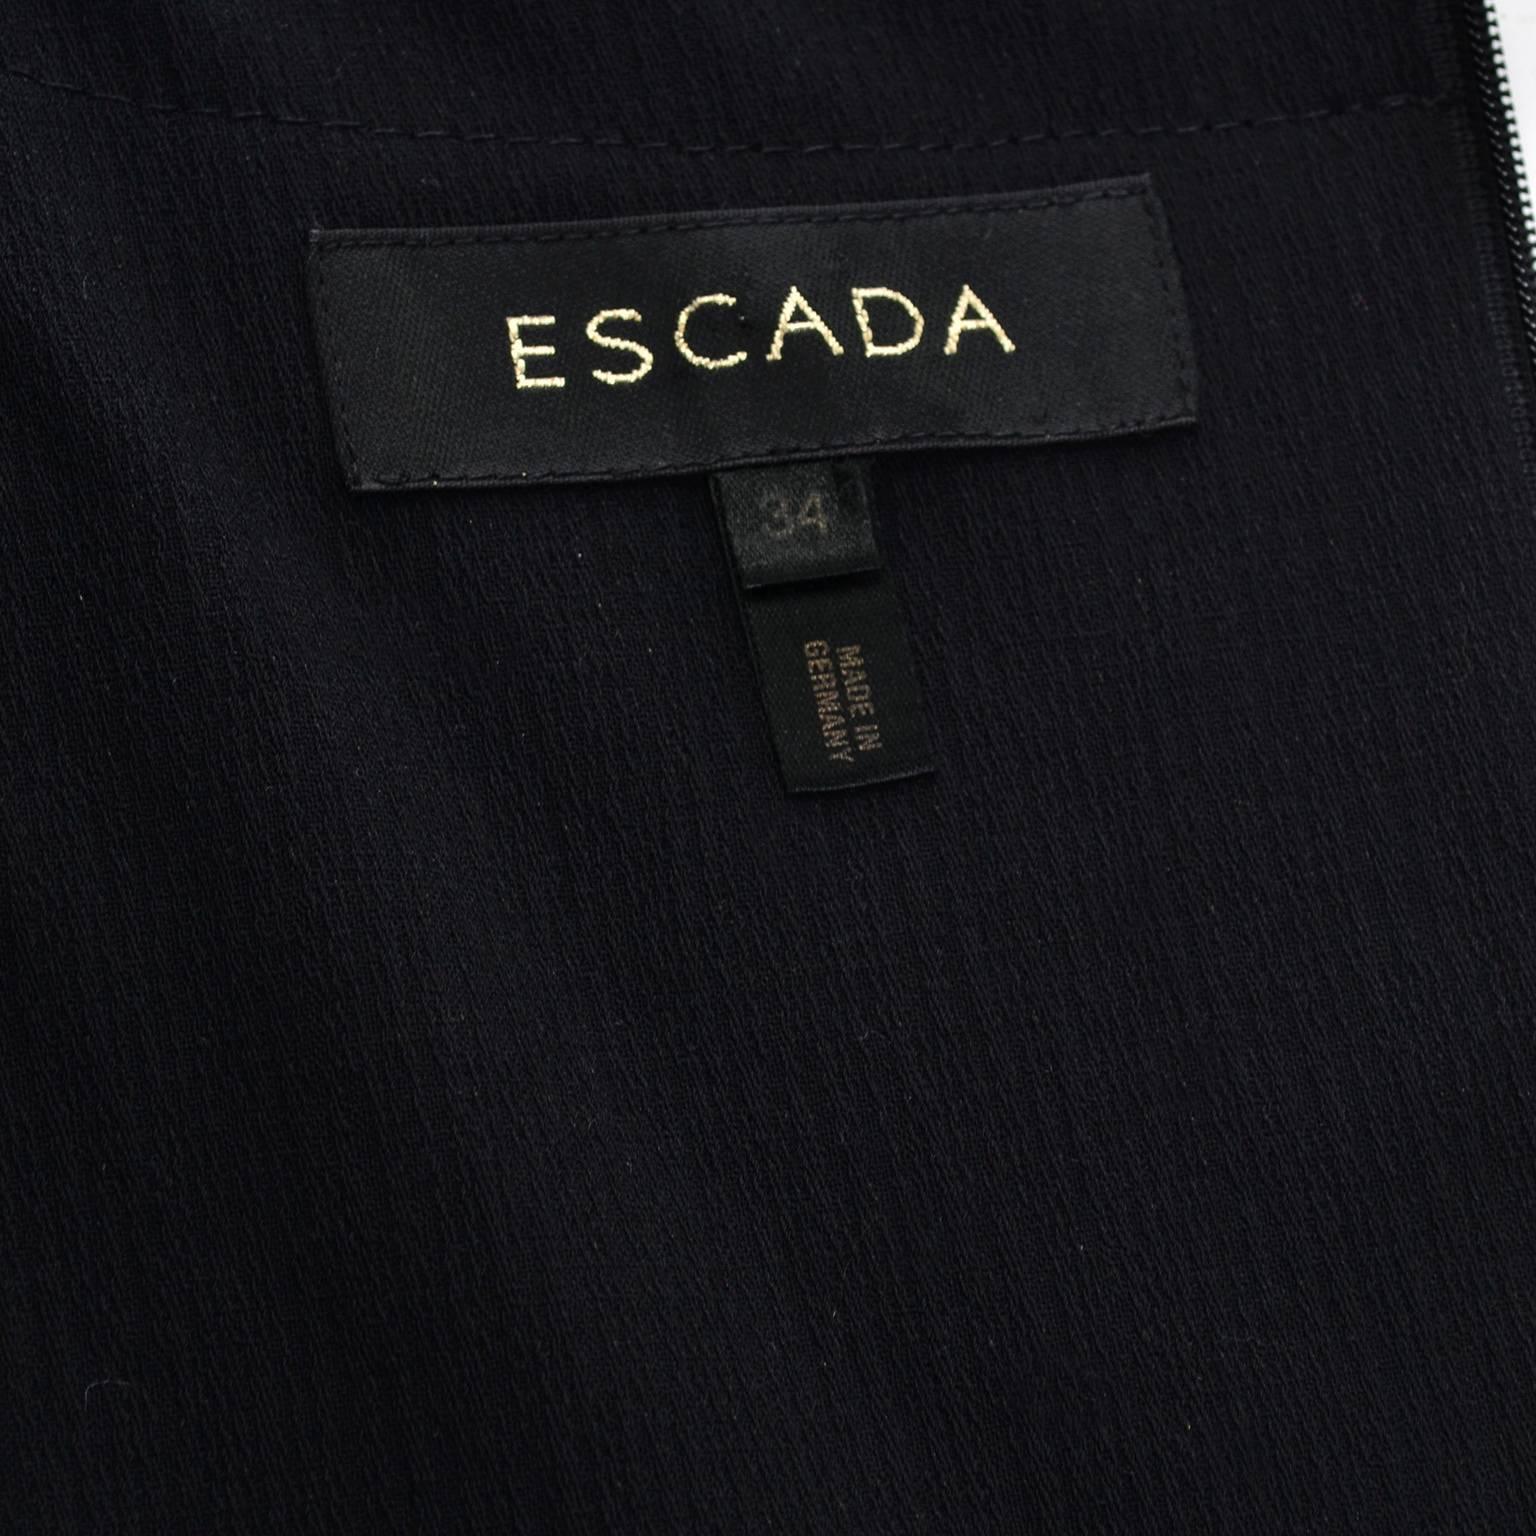 Escada 2 Piece Sleeveless Dress Jacket Suit Logo Buttons Wool Size 4 2